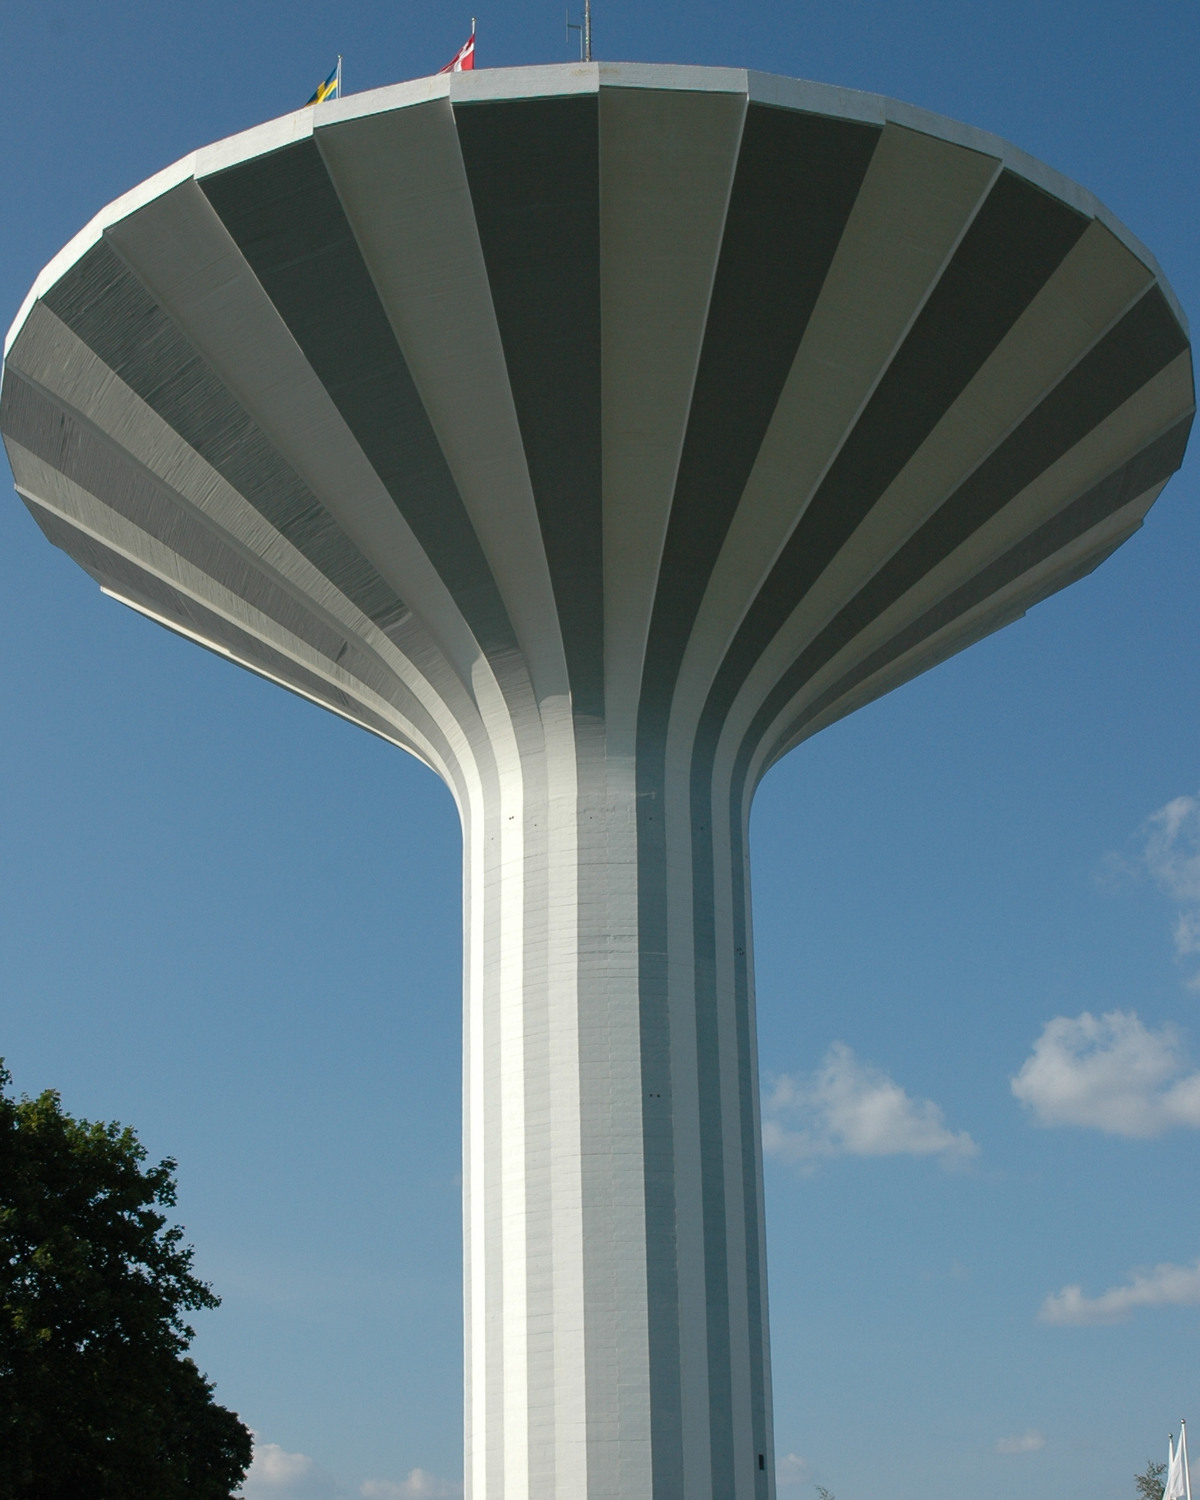 Bild på vattentornet Svampen. Vattentornet har vita och gråa upprättstående ränder som skapar ett mönster - varannan vit, varannan grå. 